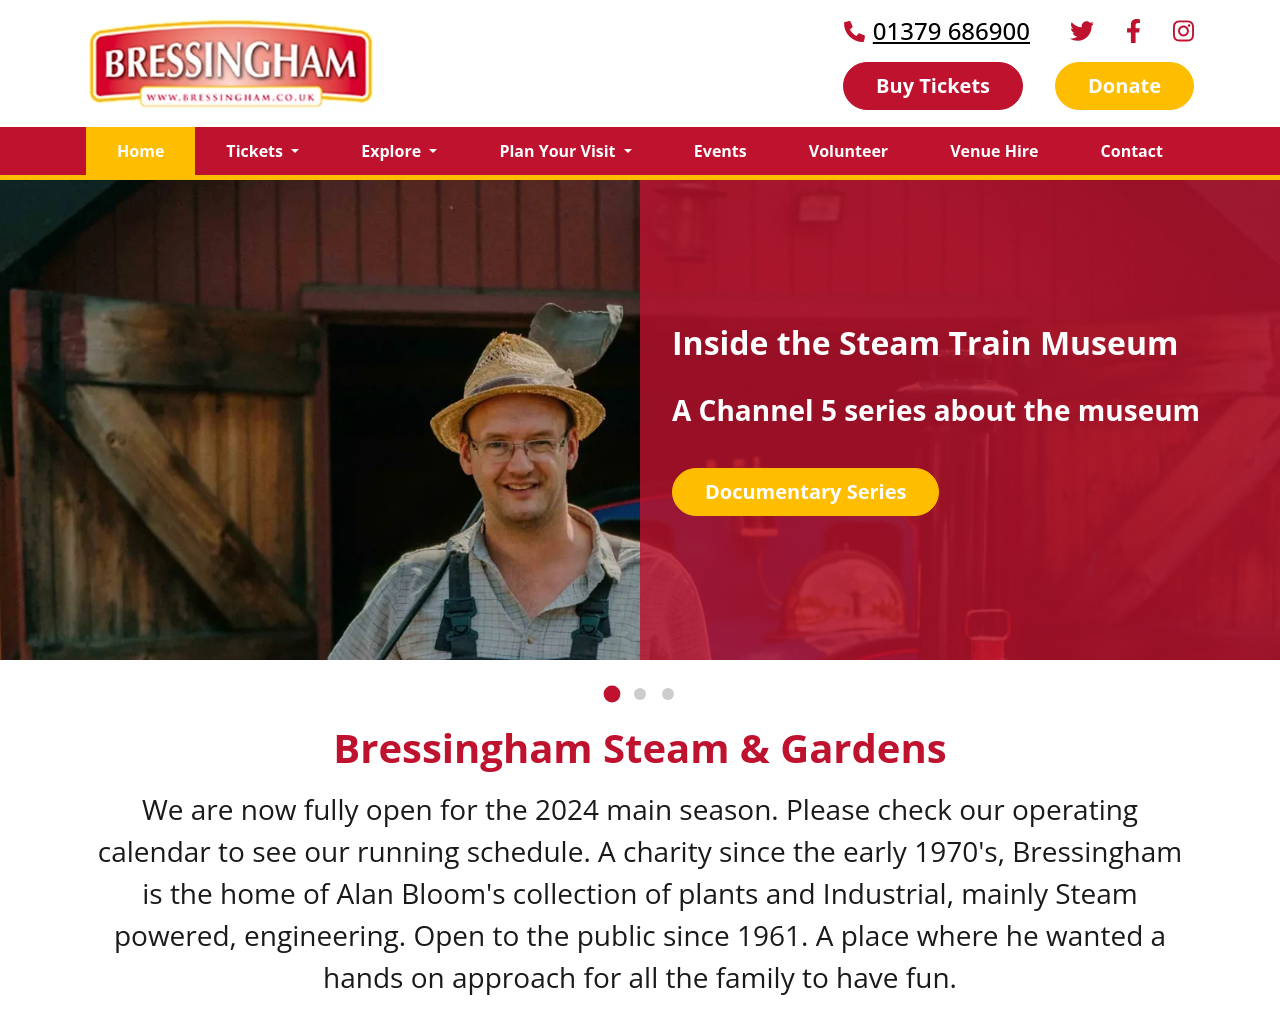 bressingham.co.uk